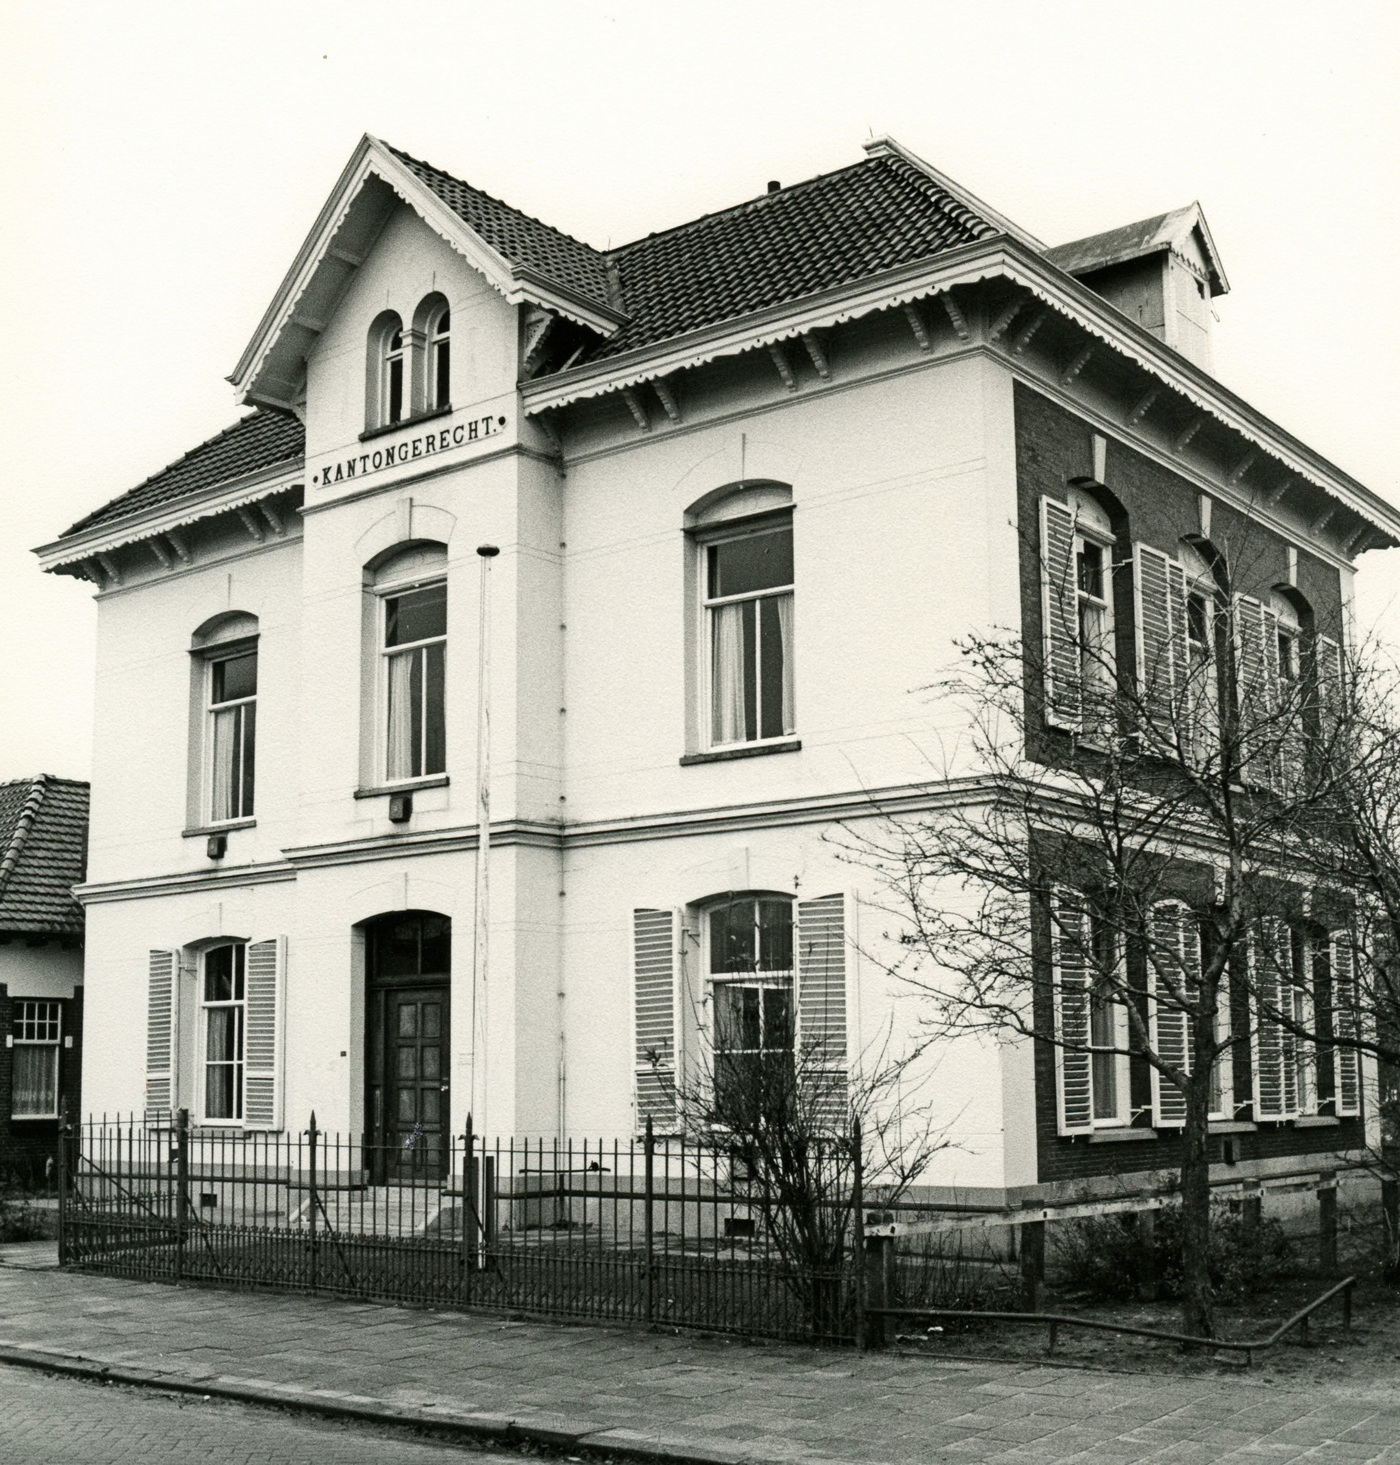 Voormalig kantongerecht aan de Spoorstraat 41 te Zuidbroek. Foto: M.A. Douma, 1974. Bron: RHC GA, Groninger Archieven, Beeldbank Groningen.